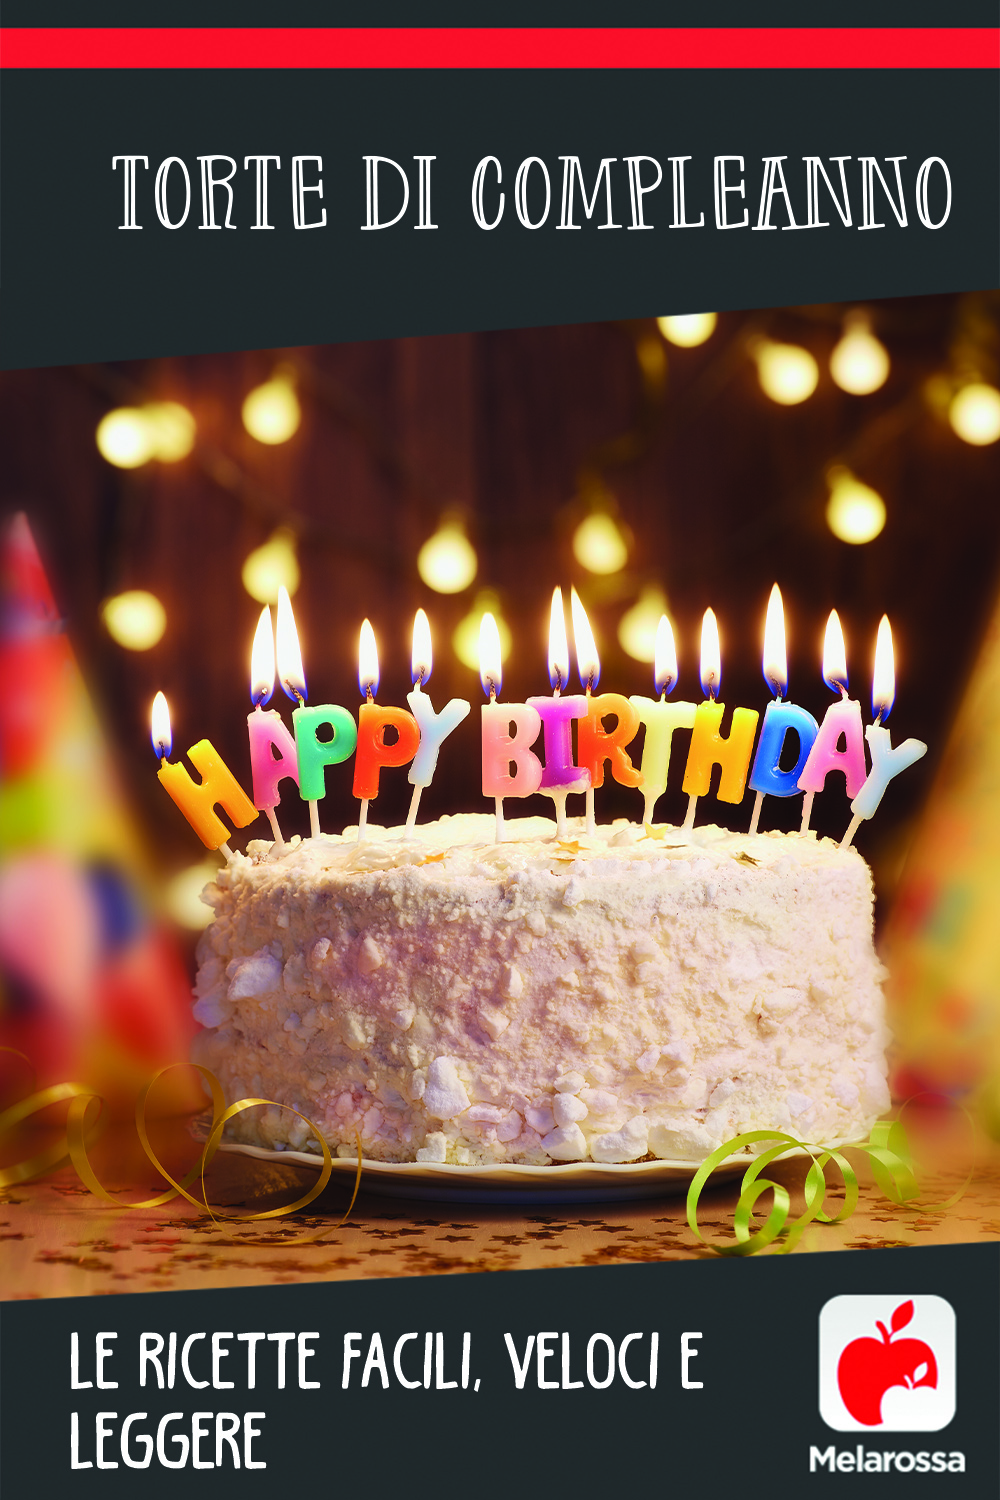 torte di compleanno: ricette veloci e facili 